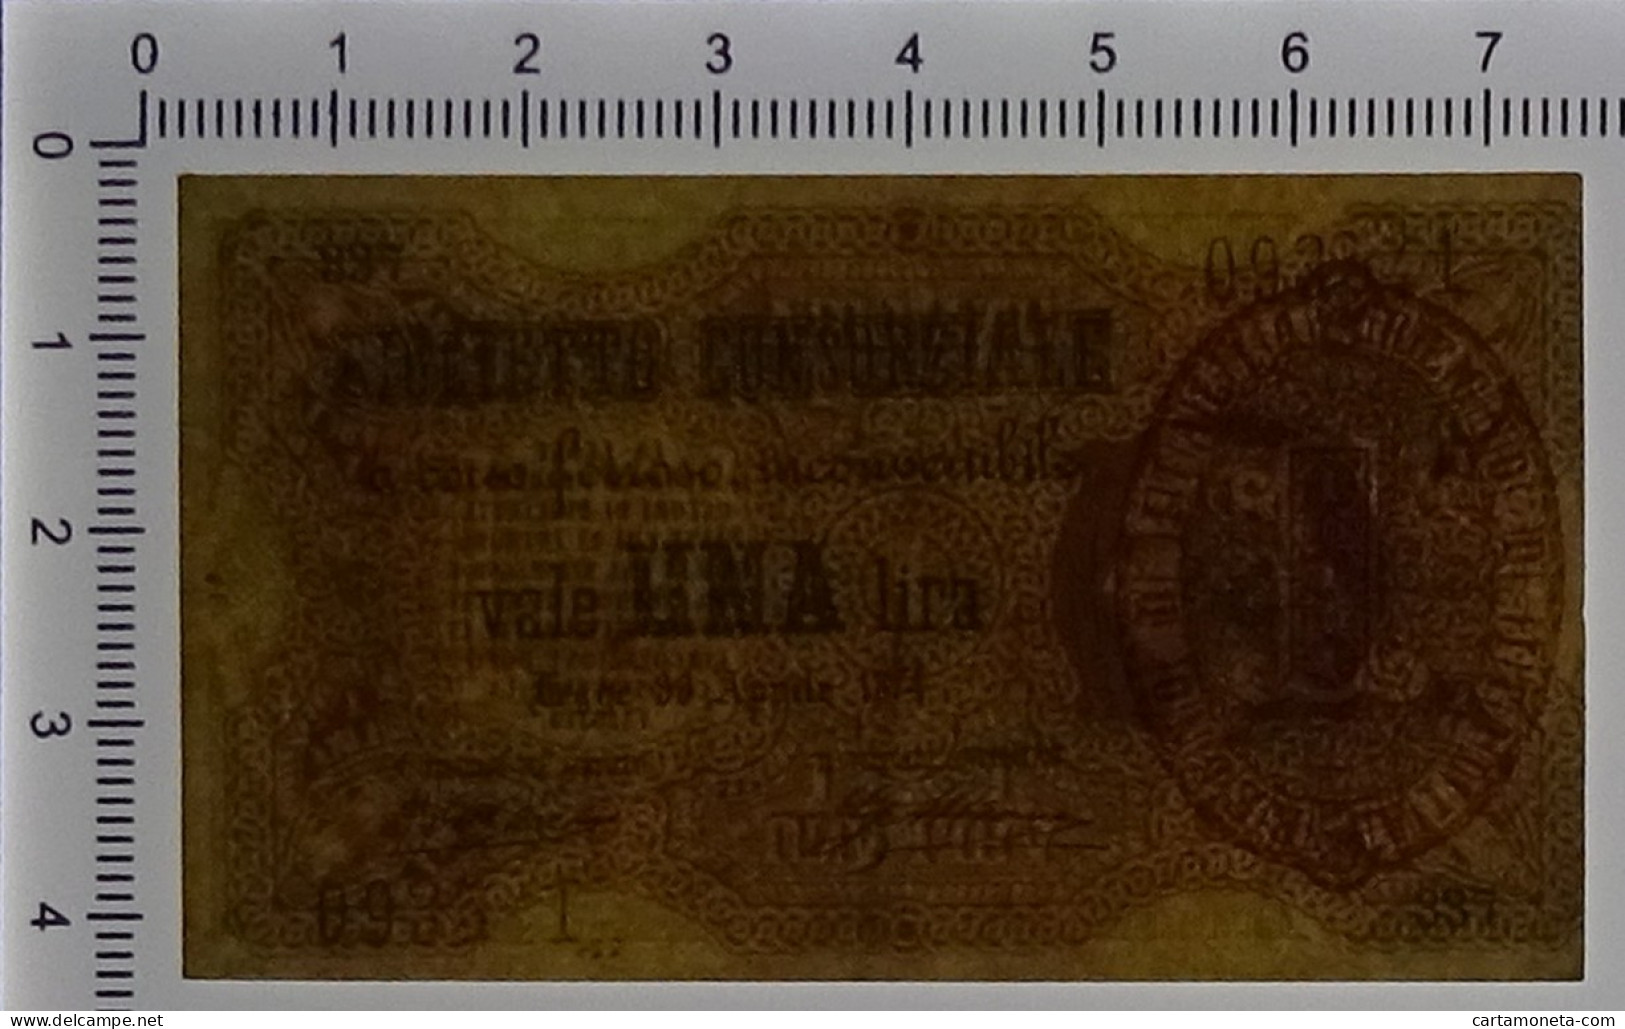 1 LIRA BIGLIETTO CONSORZIALE REGNO D'ITALIA 30/04/1874 BB/SPL - Biglietti Consorziale